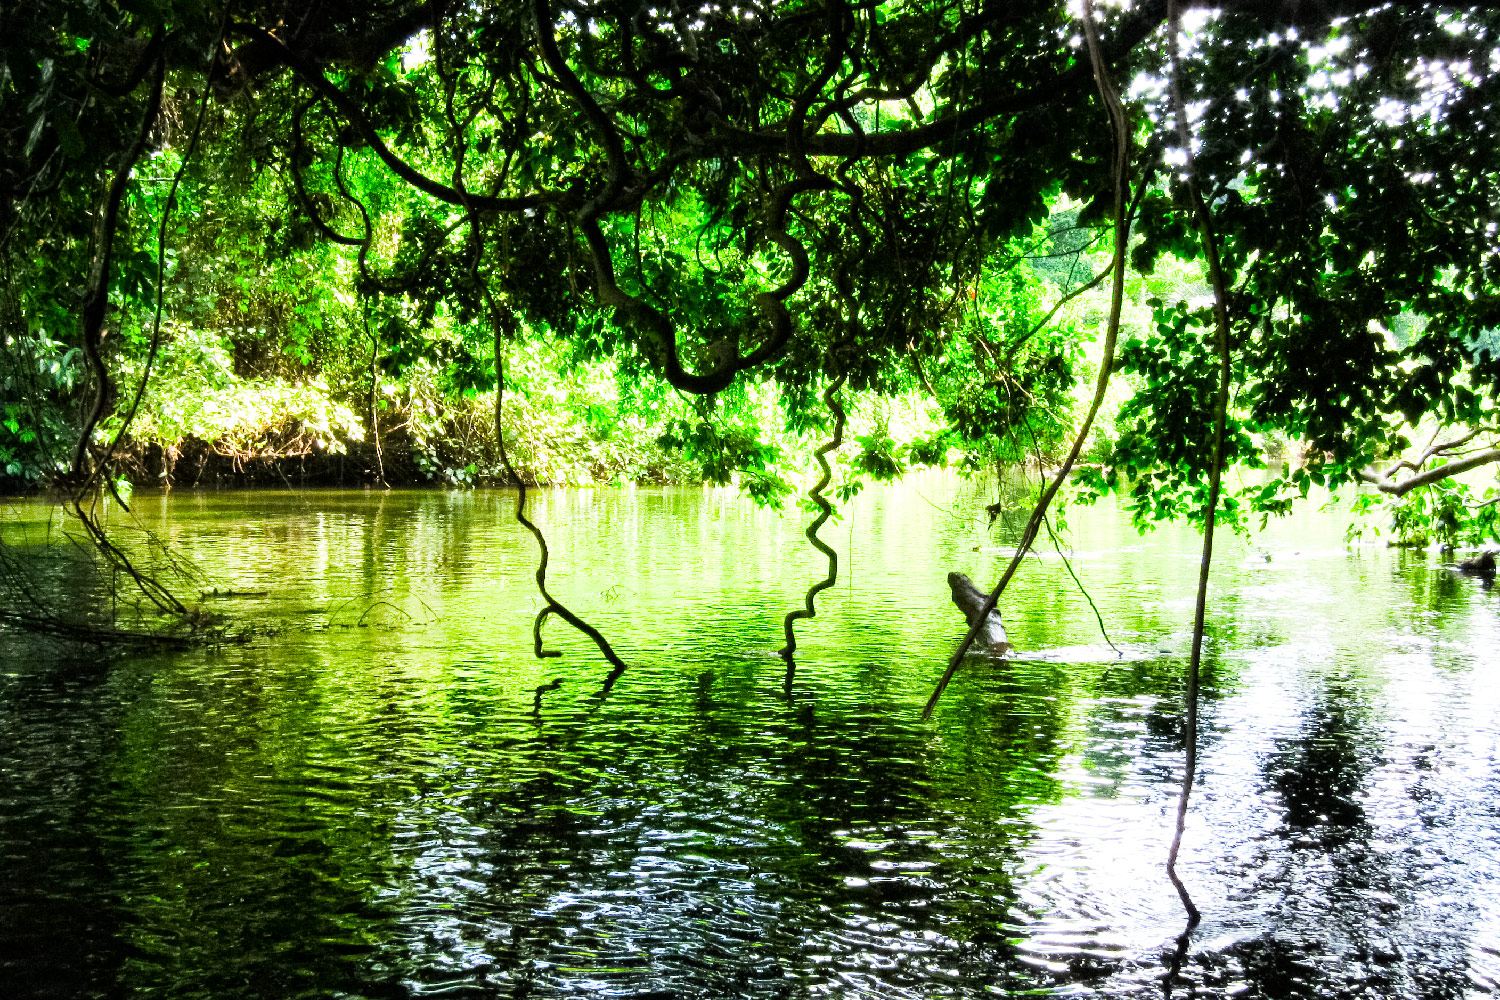 コンゴ共和国の奥地でみかけた緑に輝くジャングル